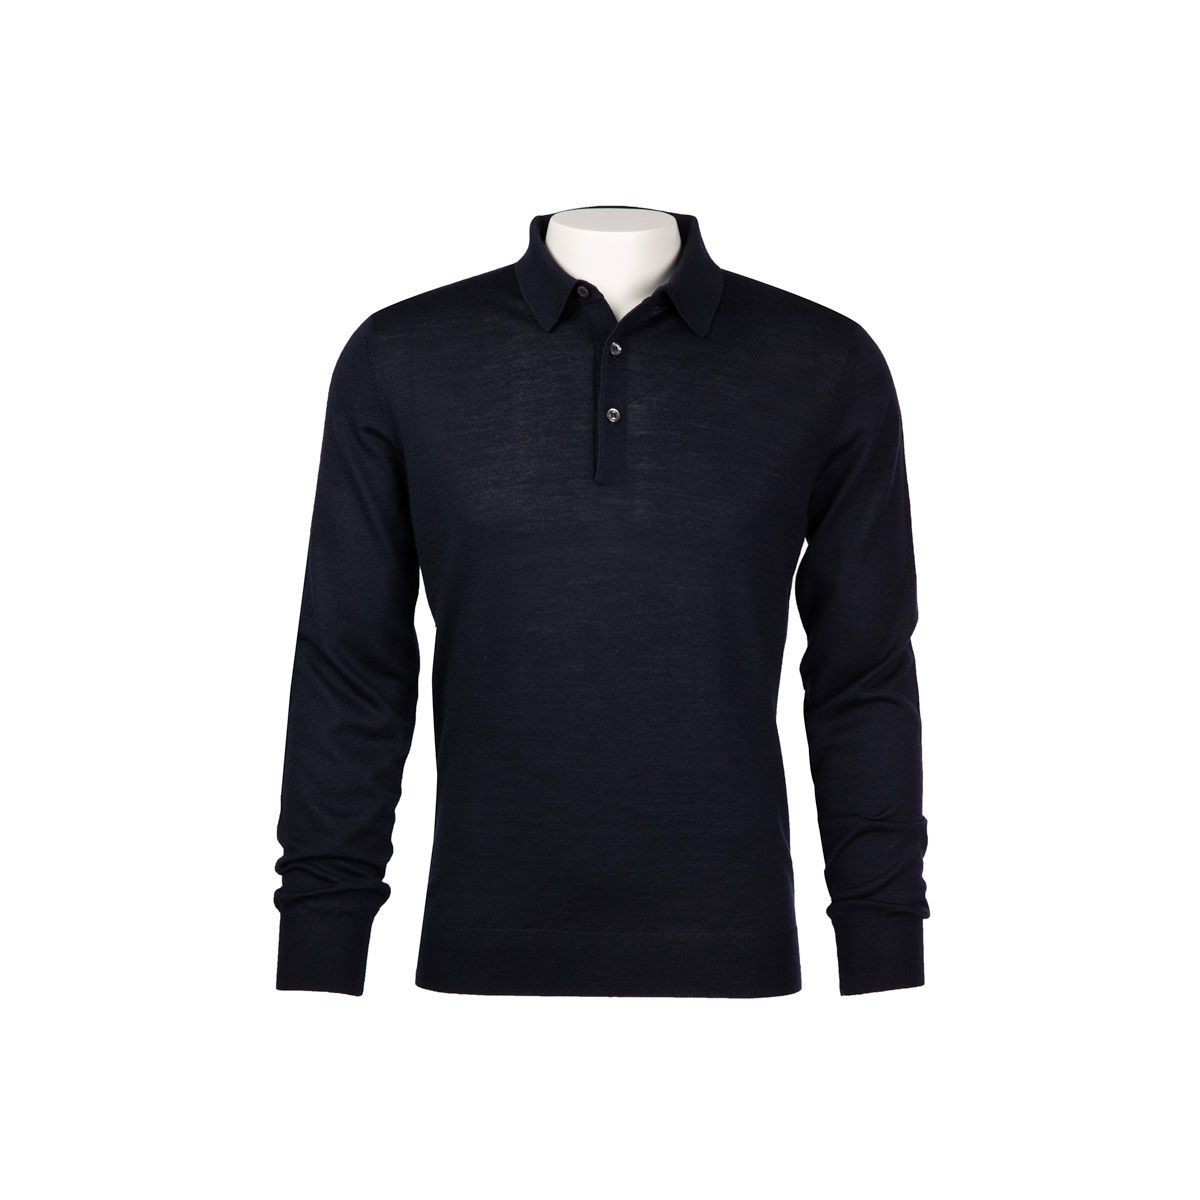 Jersey Poloshirt aus Wolle und Seide in dunkelblau